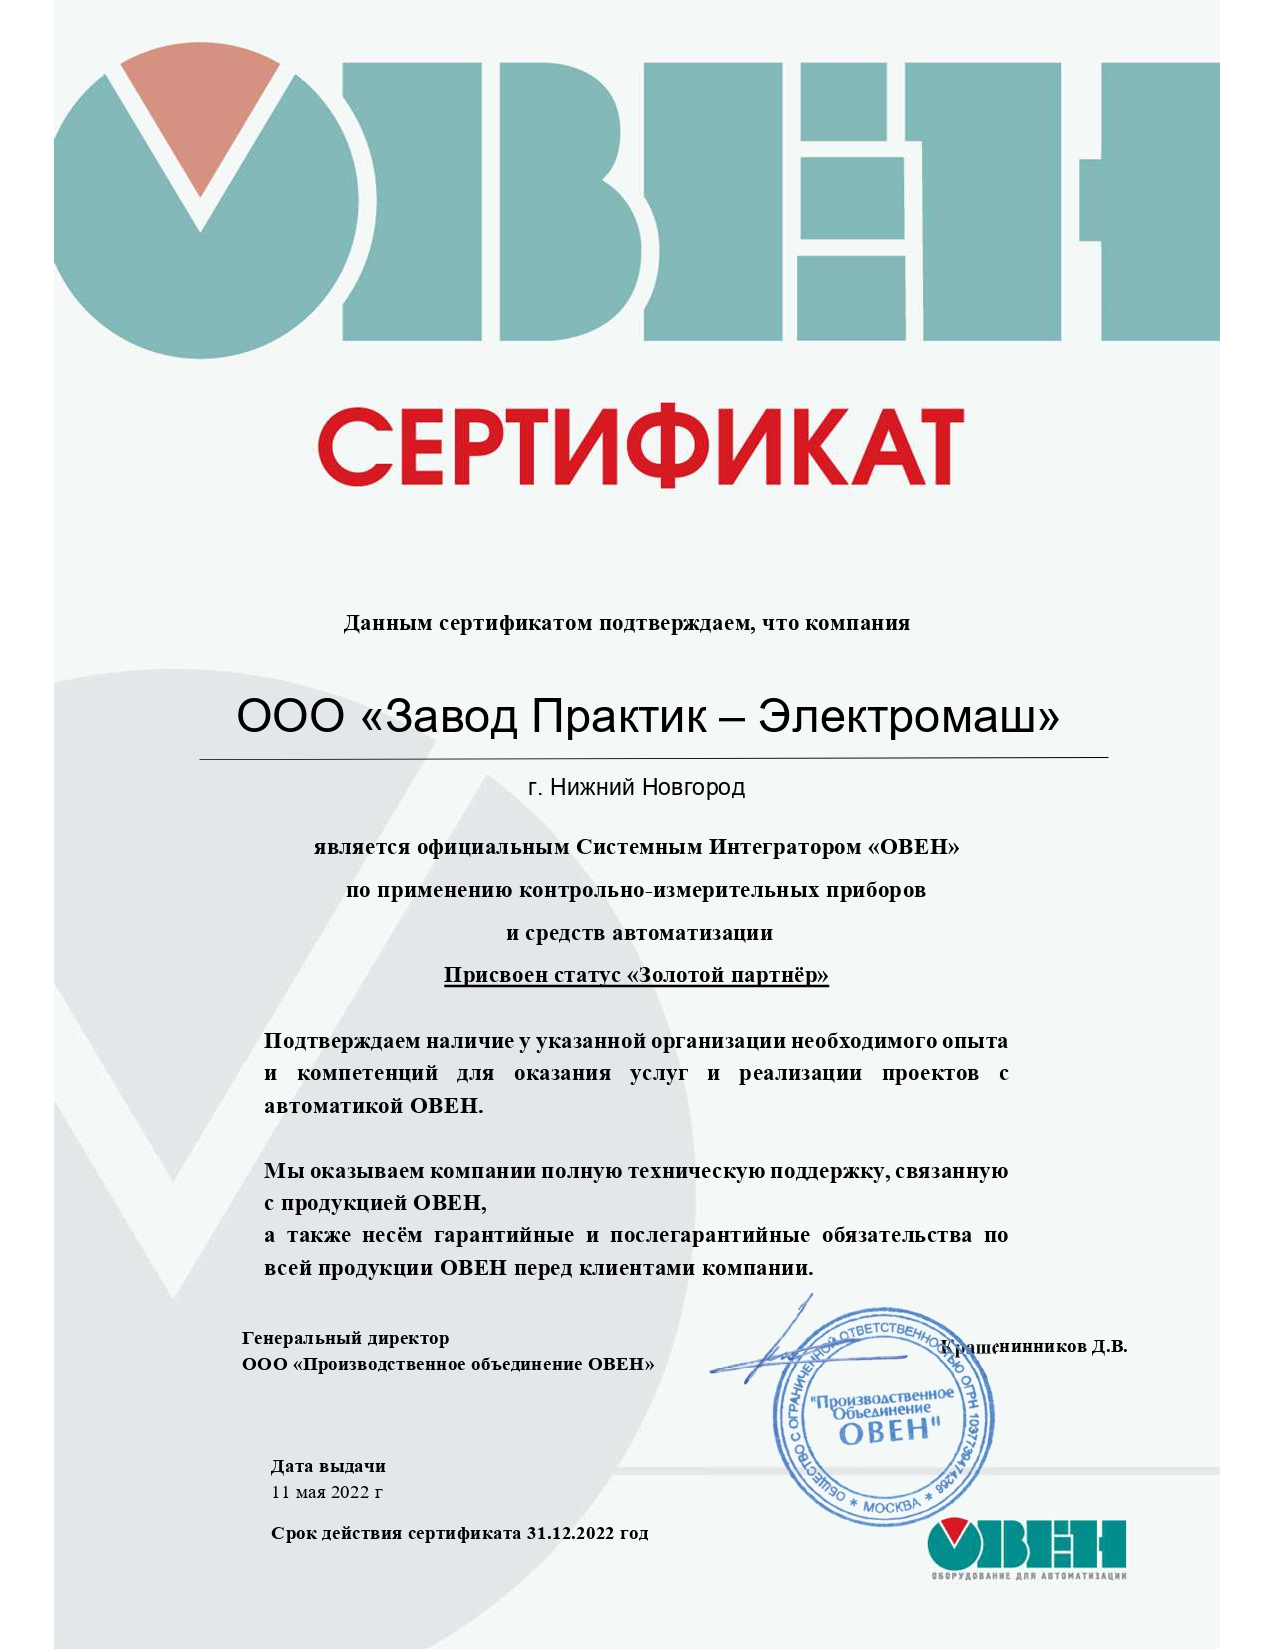 Сертификат официального системного интегратора "ОВЕН"